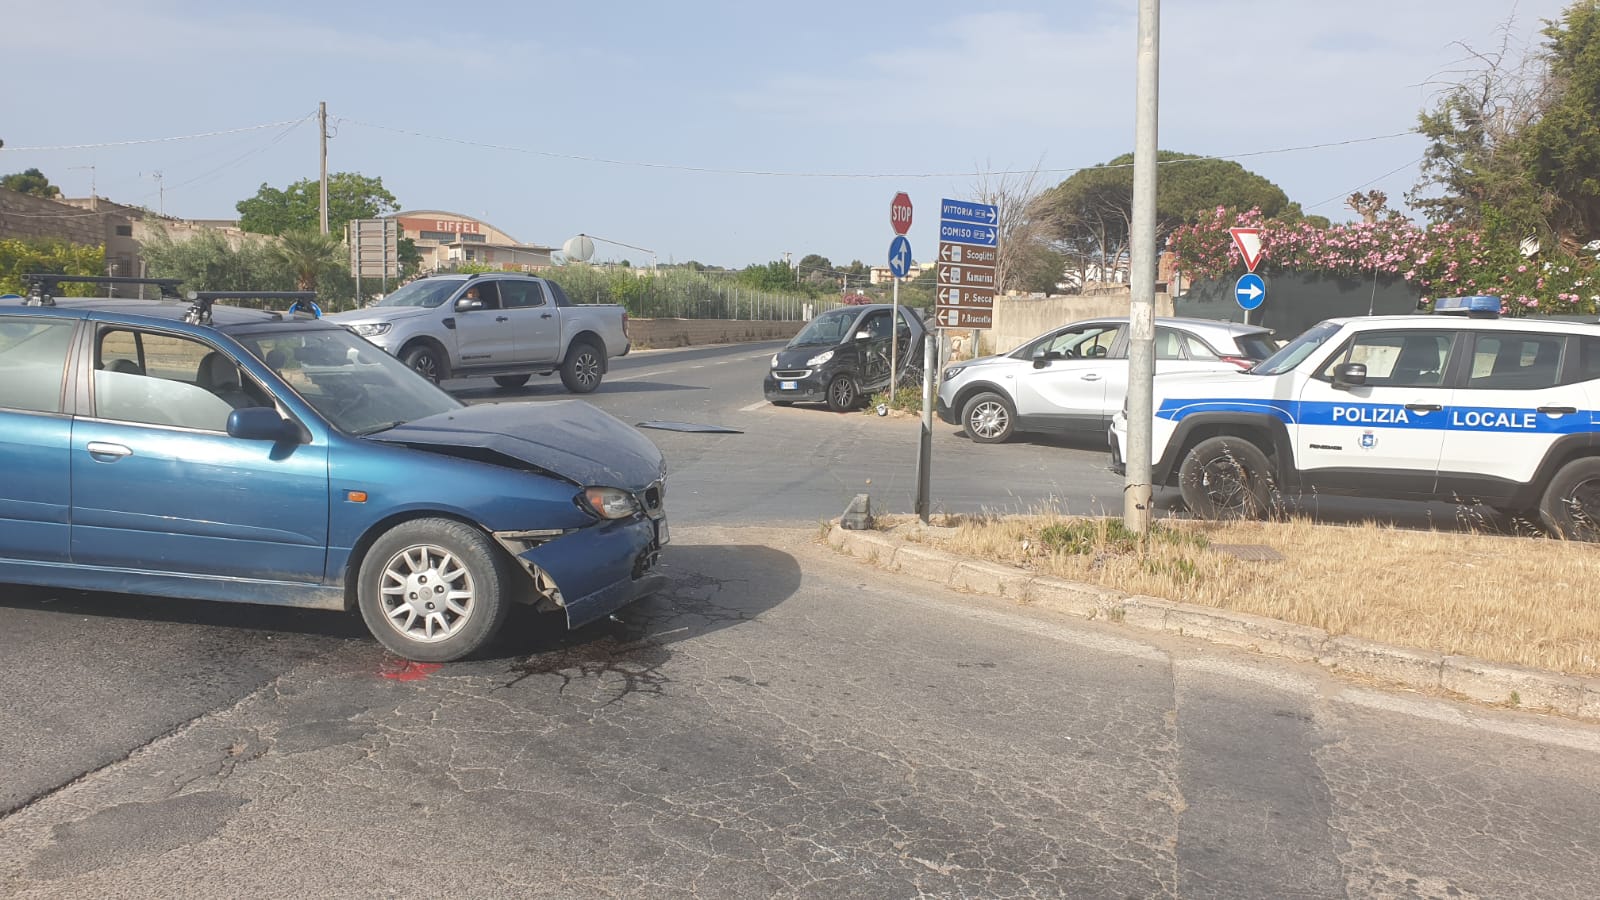  Incidente sulla S.Croce-Scoglitti: illesi i conducenti dei due mezzi